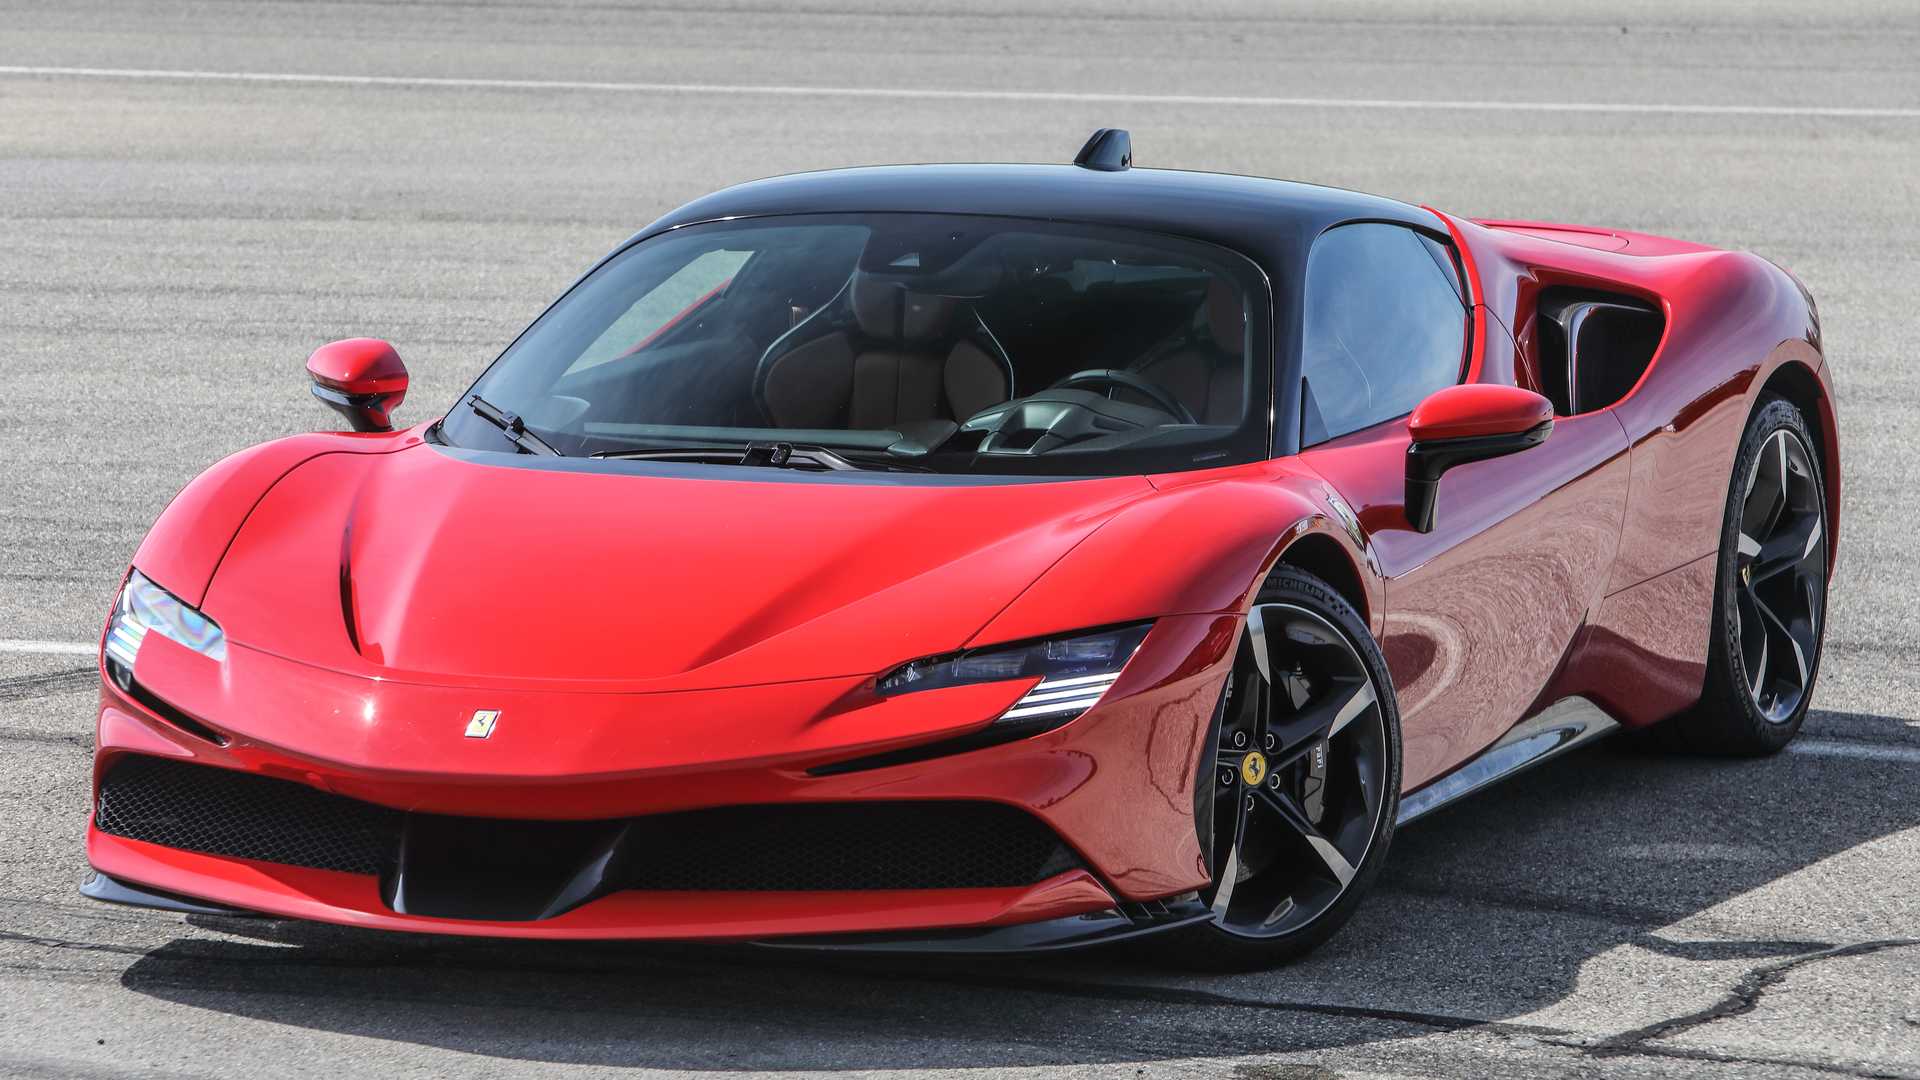 Ferrari'nin İlk Elektrikli Otomobili 2025'te Yollarda Olacak